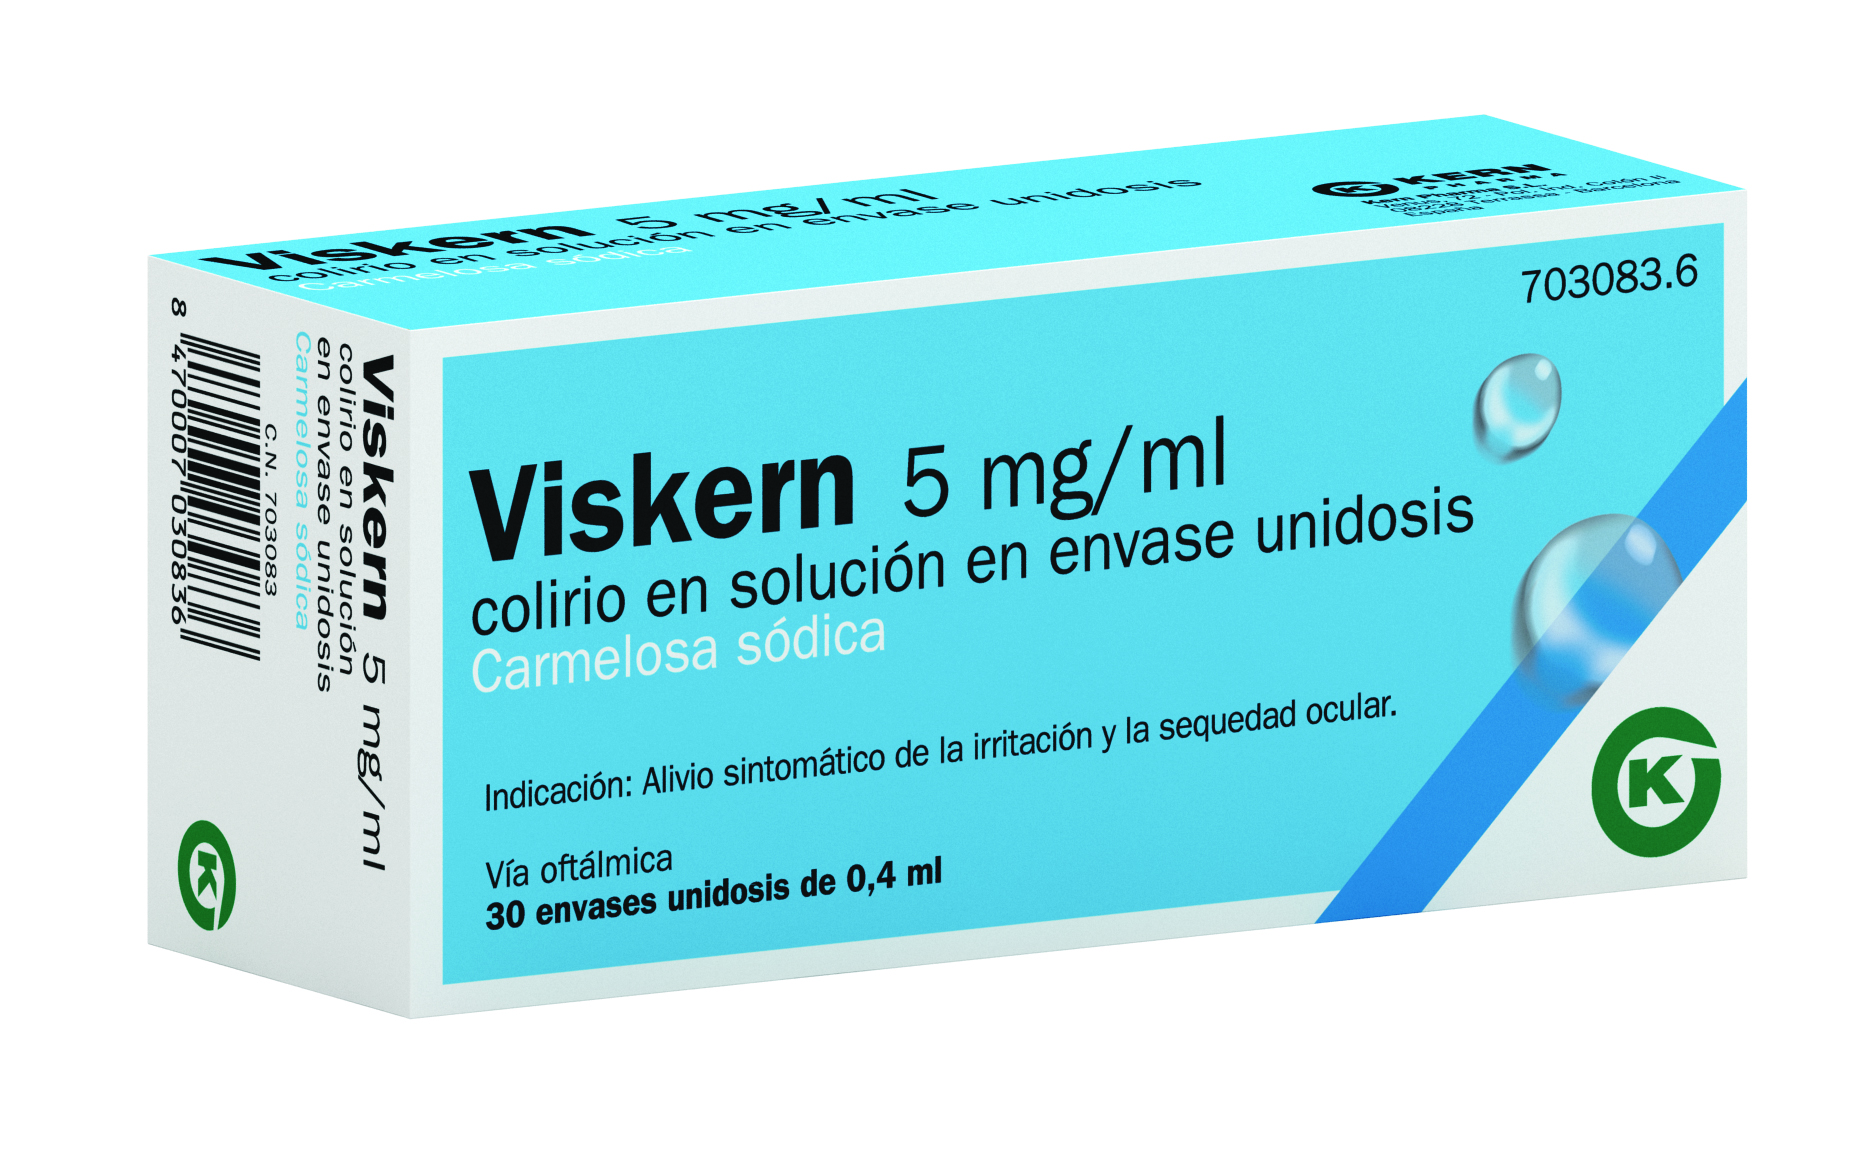 VISKERN 5 MG/ML COLIRIO EN SOLUCION EN ENVASE UNIDOSIS , 30 envases unidosis de 0,4 ml